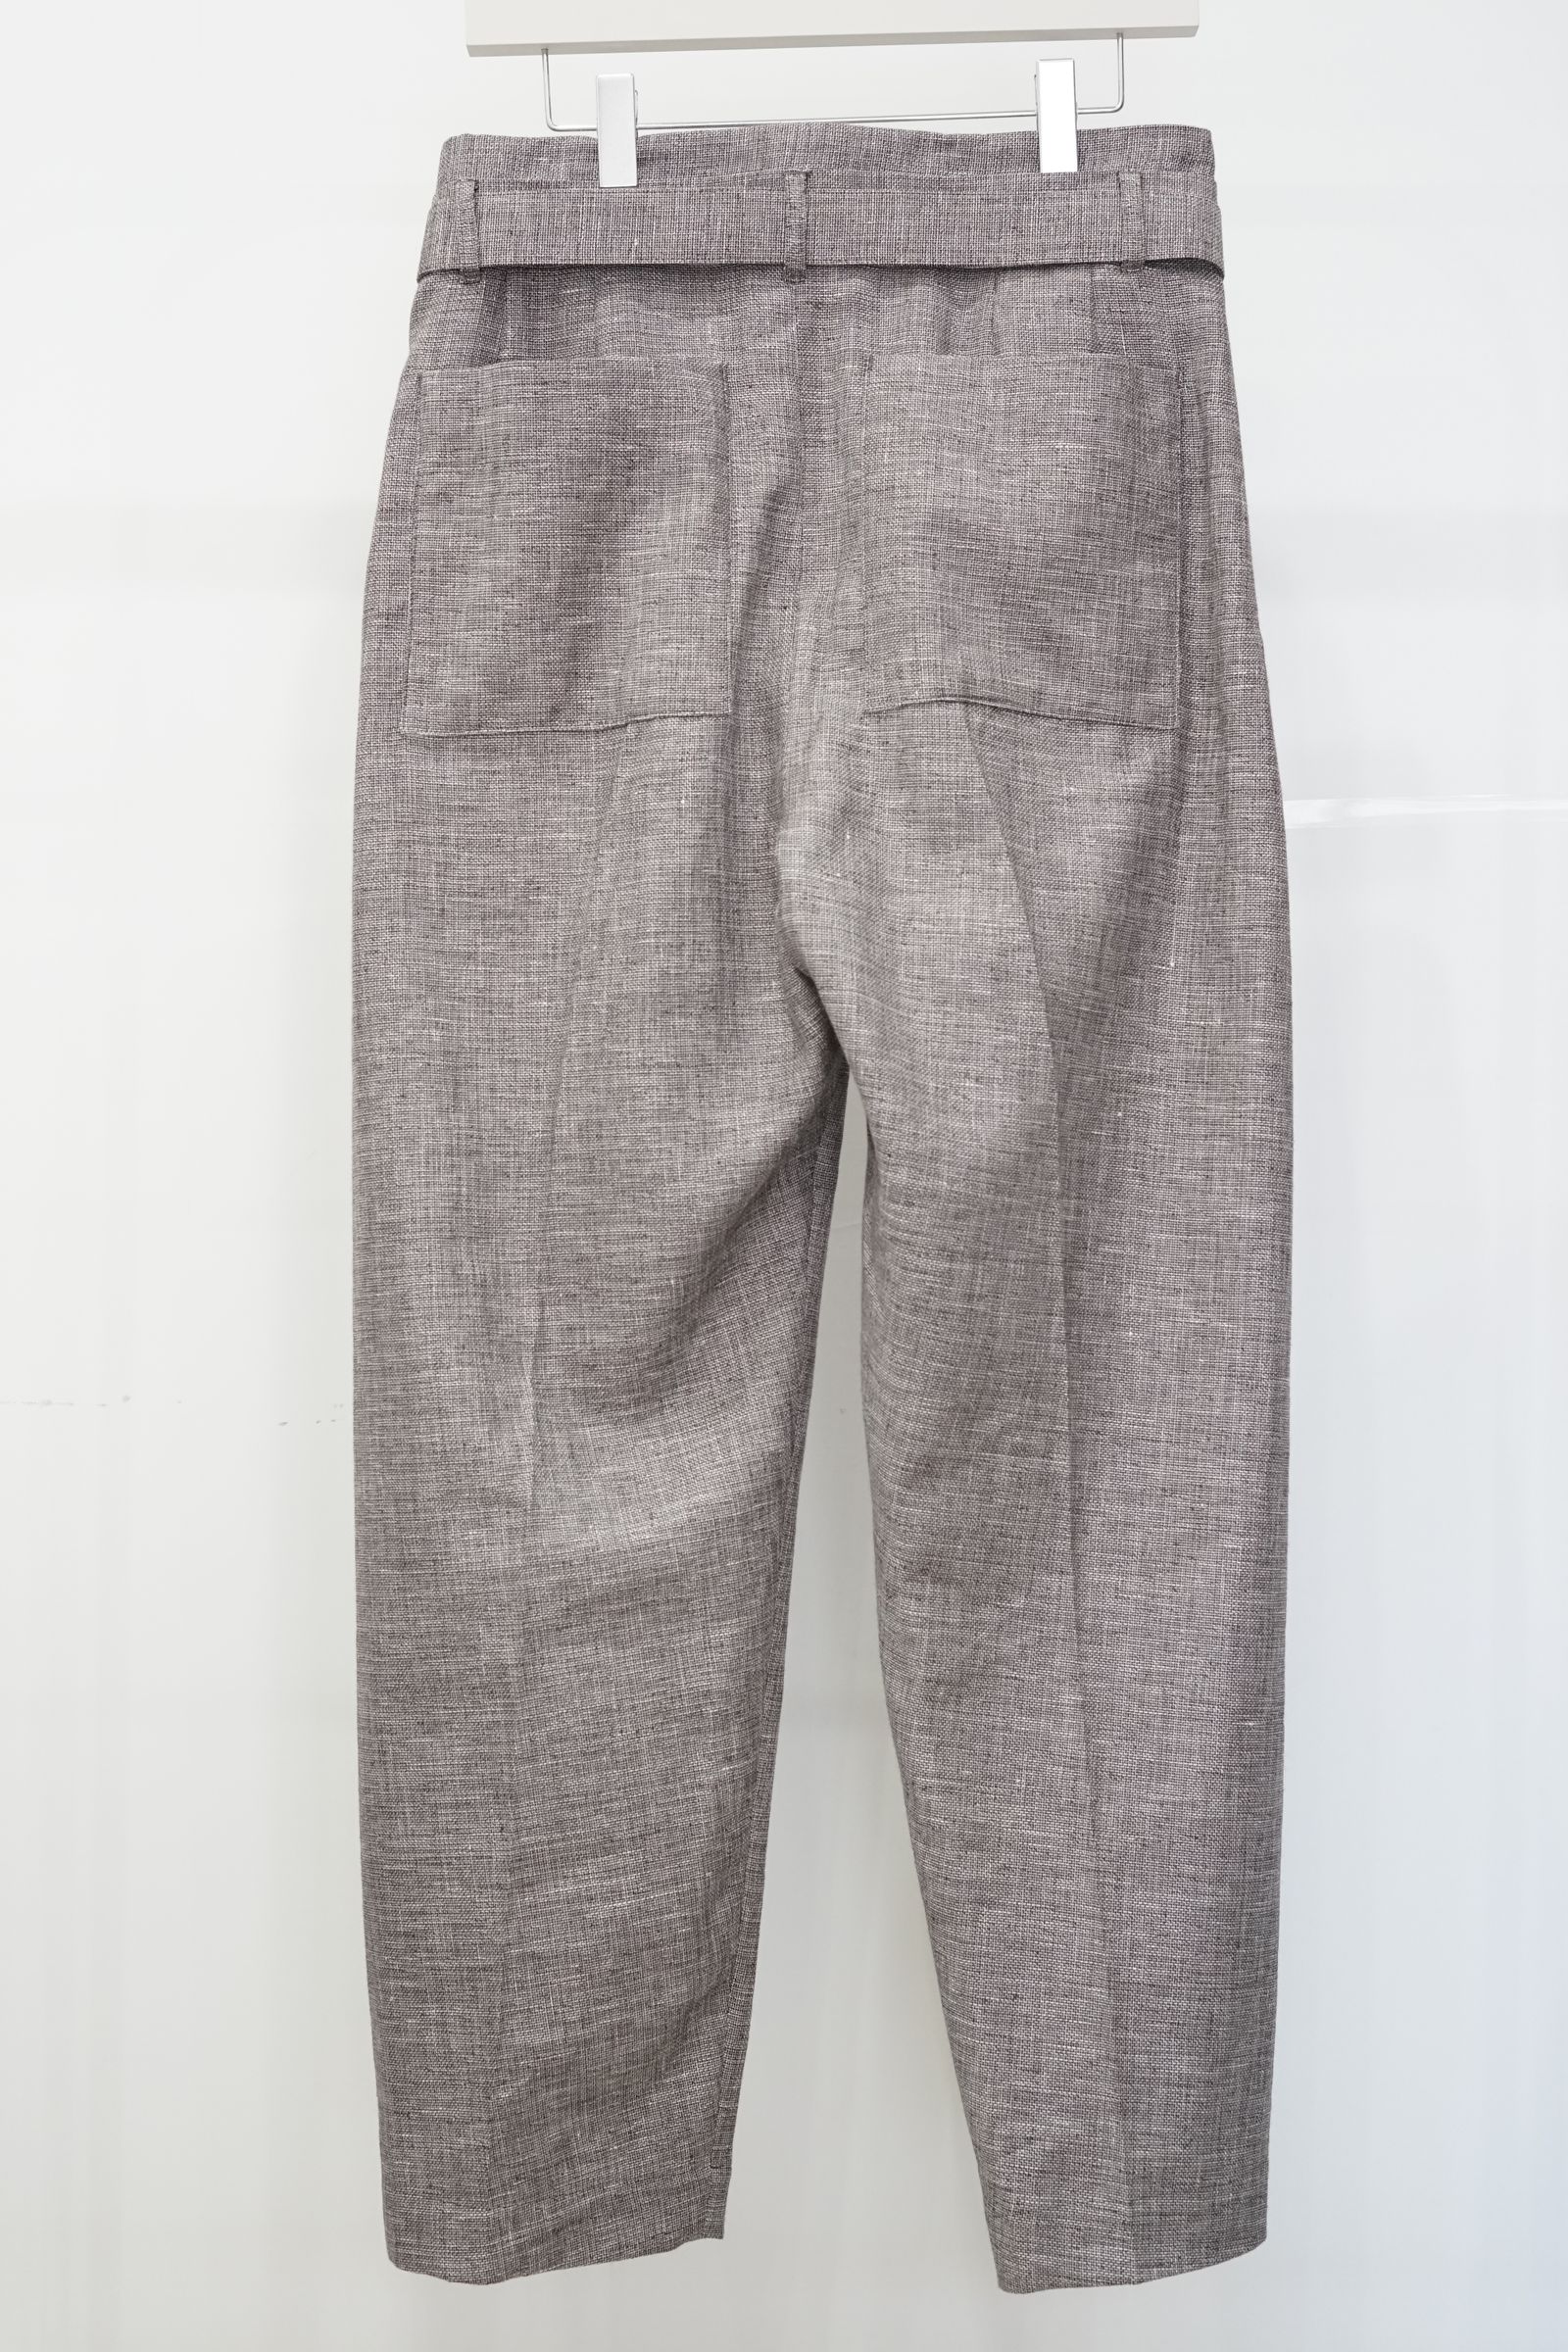 SEEALL - Manchester pants-brown mix-23ss men | asterisk